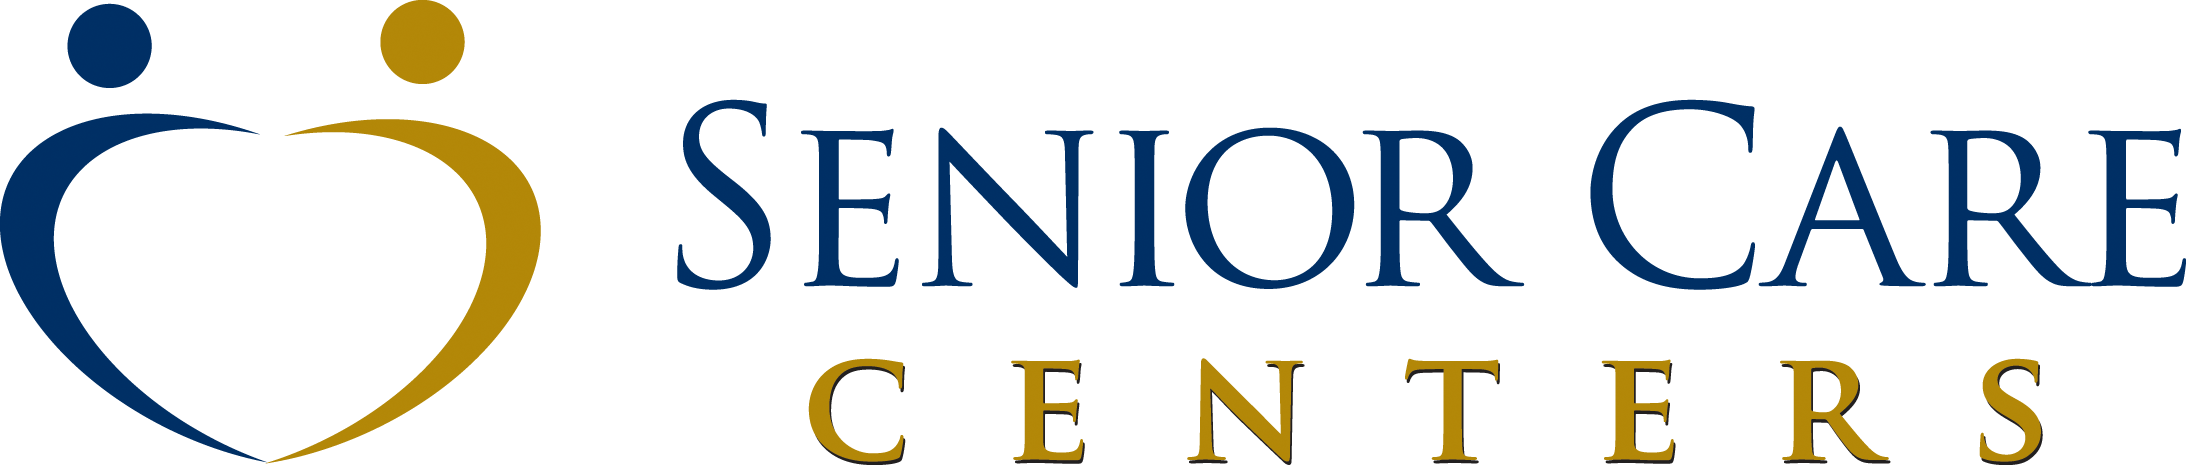 Seniorcarecenters Logo - Senior Care Centers. Skilled Nursing Homes, Assisted Living